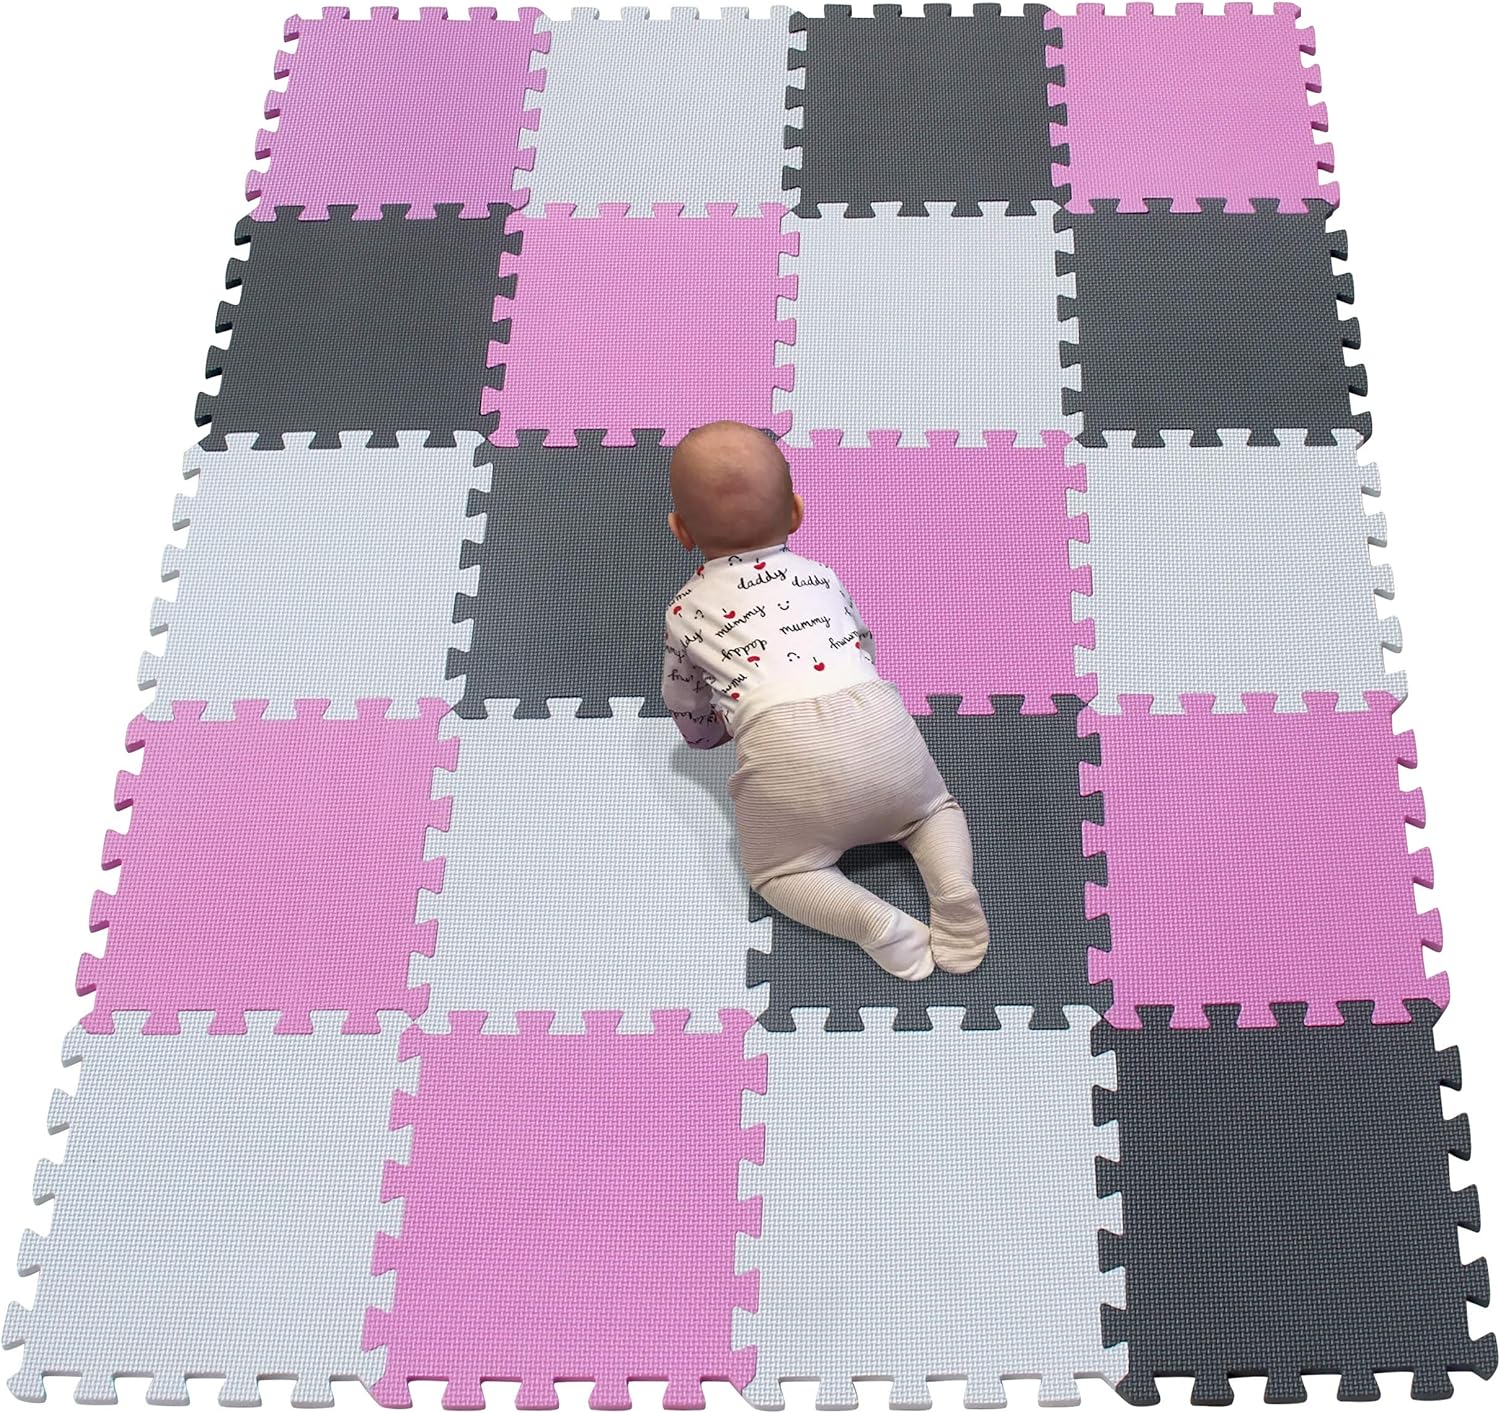 foam floor mats for babies